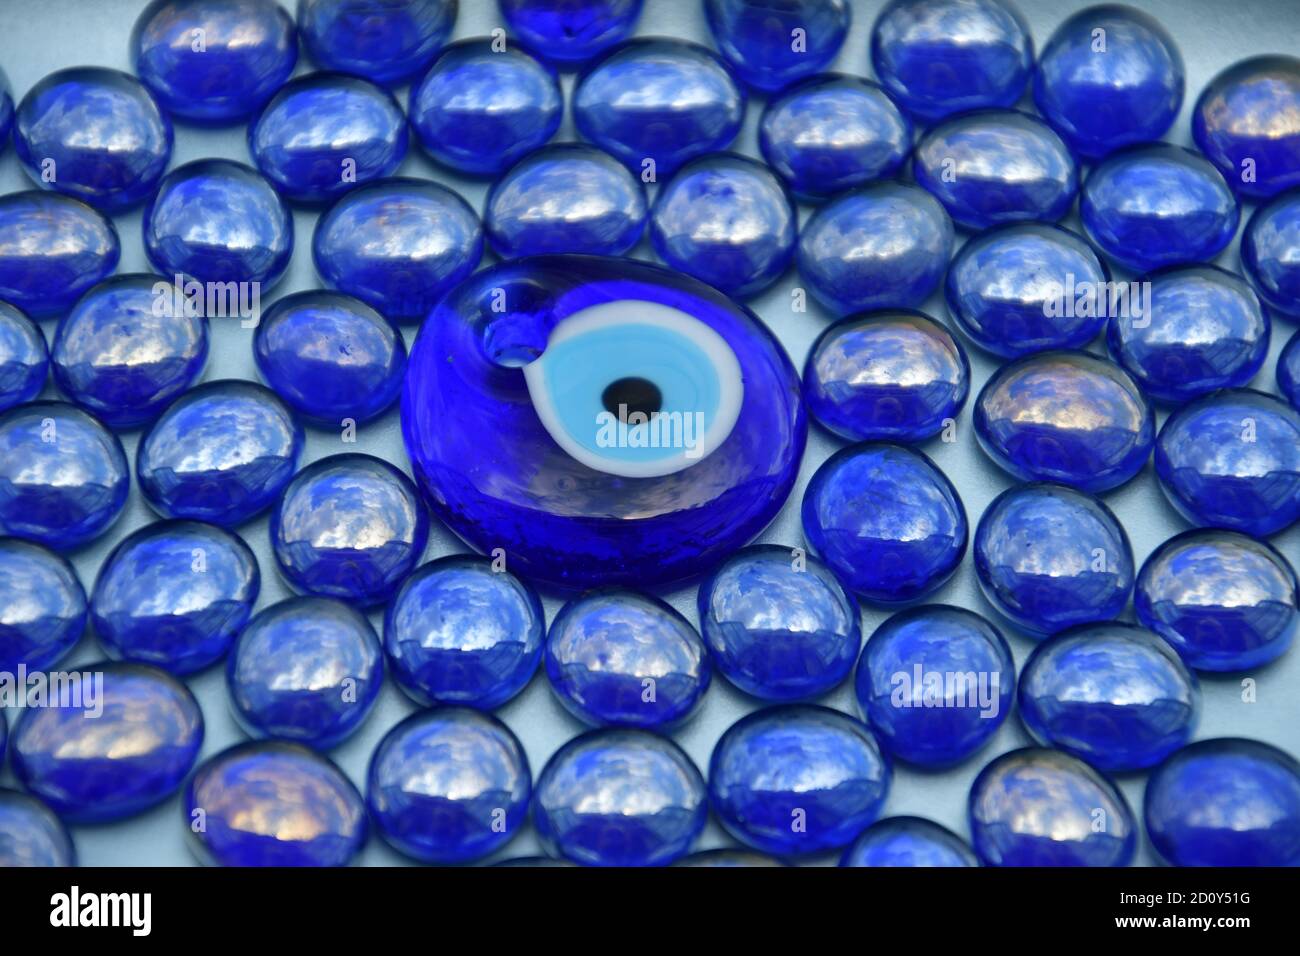 Eine Vogelperspektive von glänzenden irriabent blauen Glasperlen mit einem zentralen Pfau Design Perle. Stockfoto